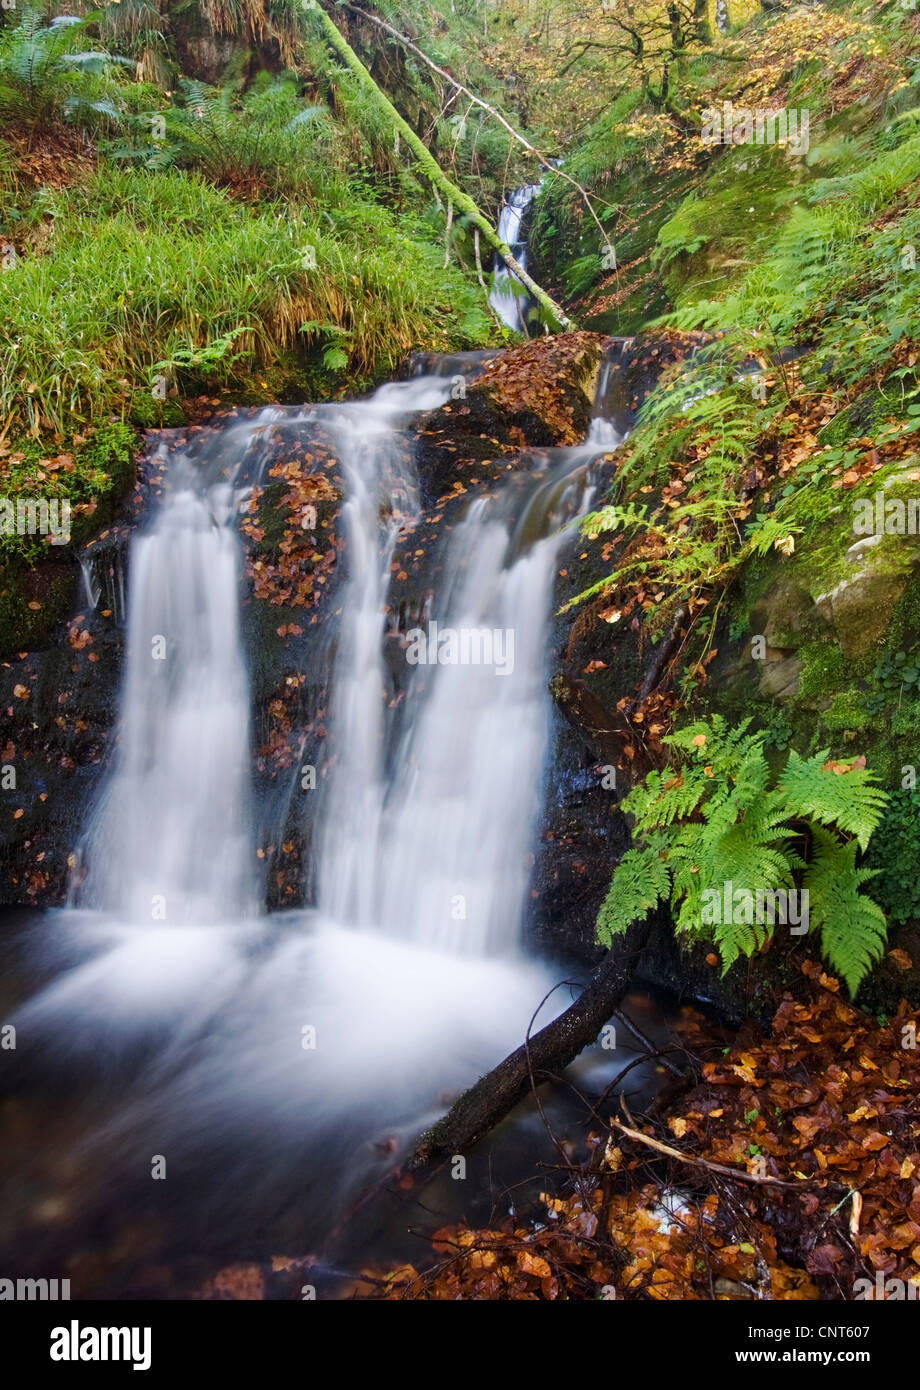 Chute d'eau à un ruisseau de la forêt, de l'Espagne, Navarra, Pyrénées, Selva de Irati Banque D'Images